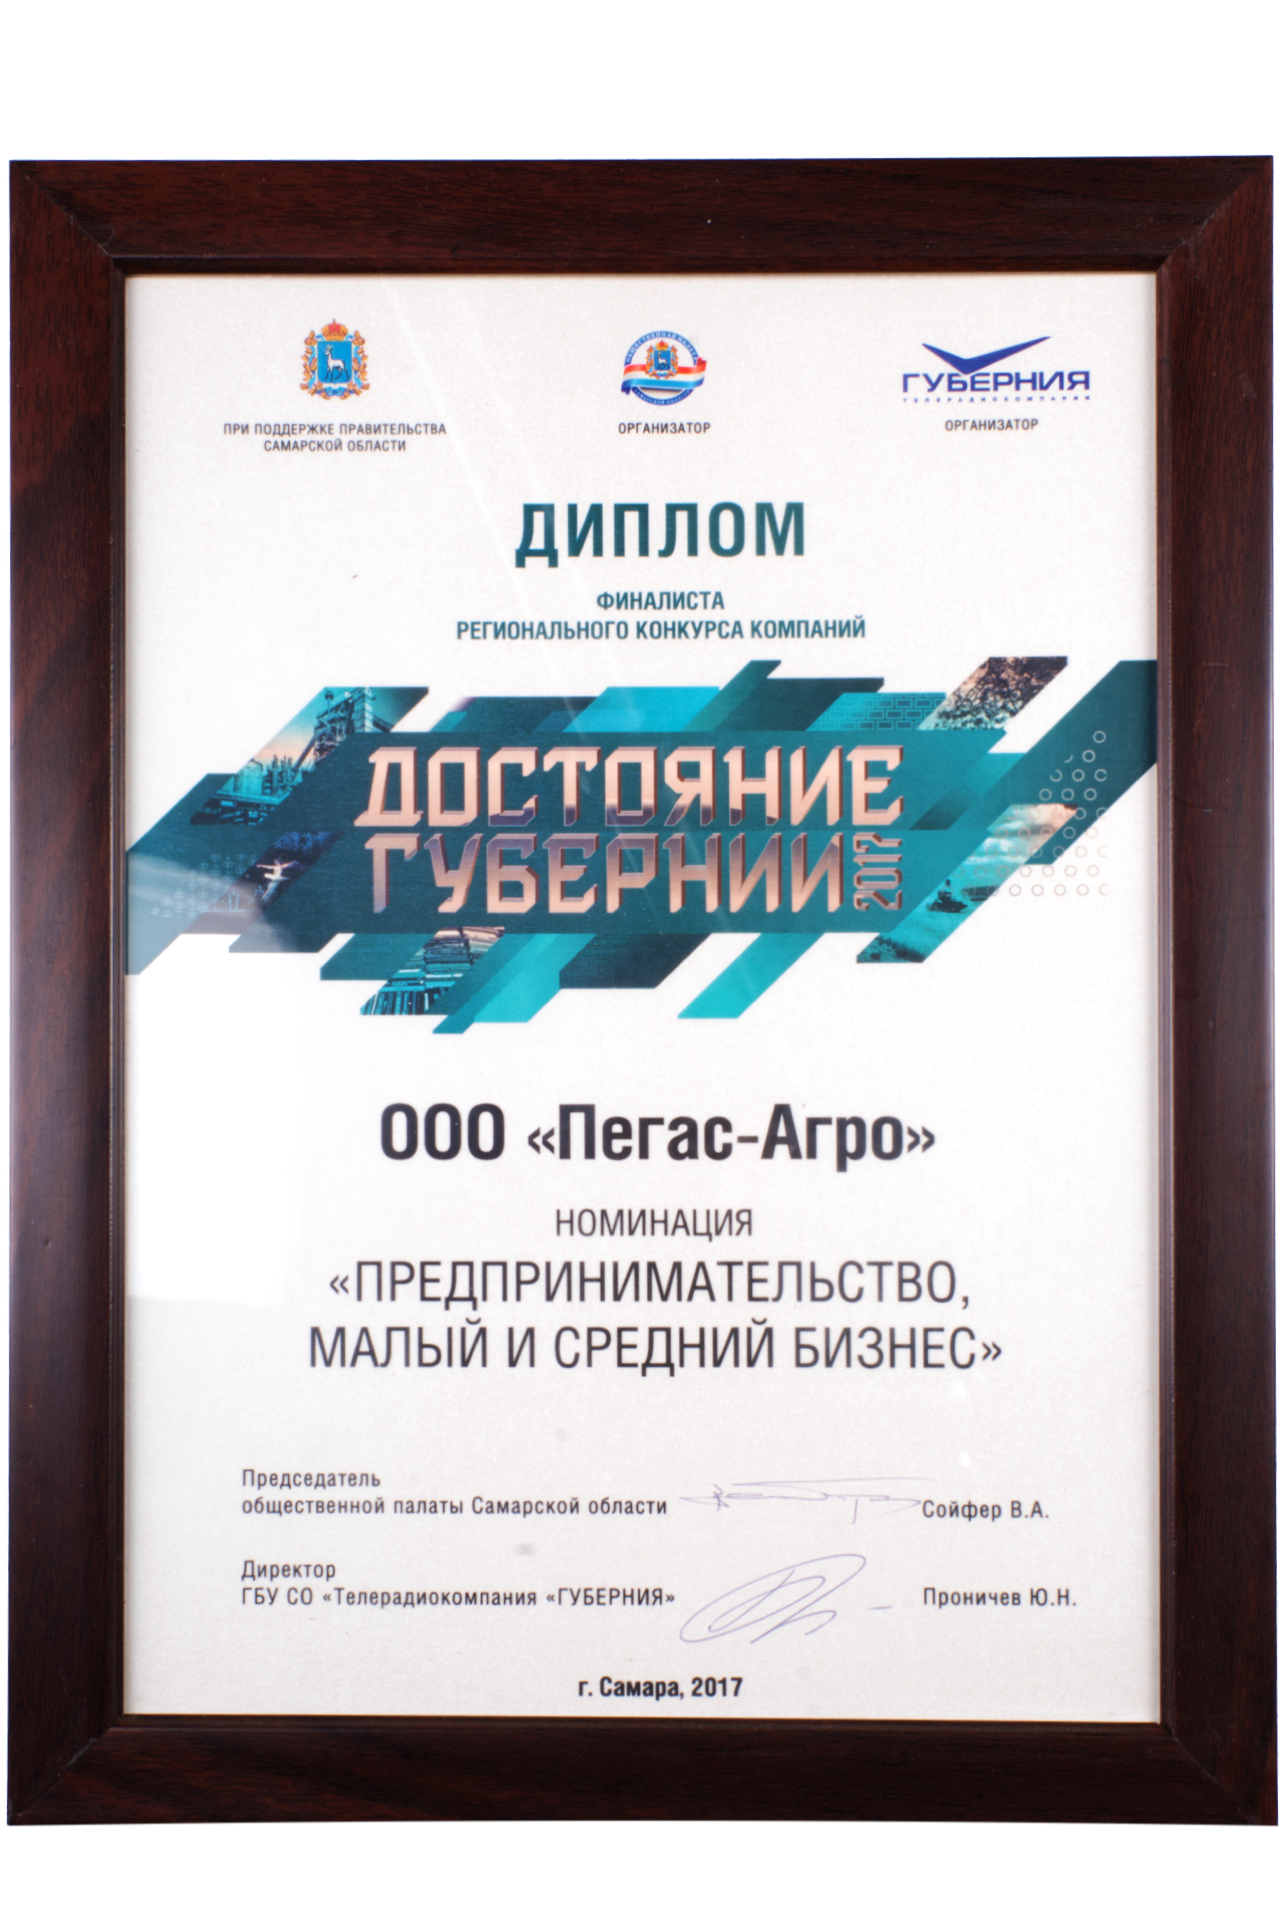 Диплом финалиста регионального конкурса компаний «Достояние губернии — 2017», Самара